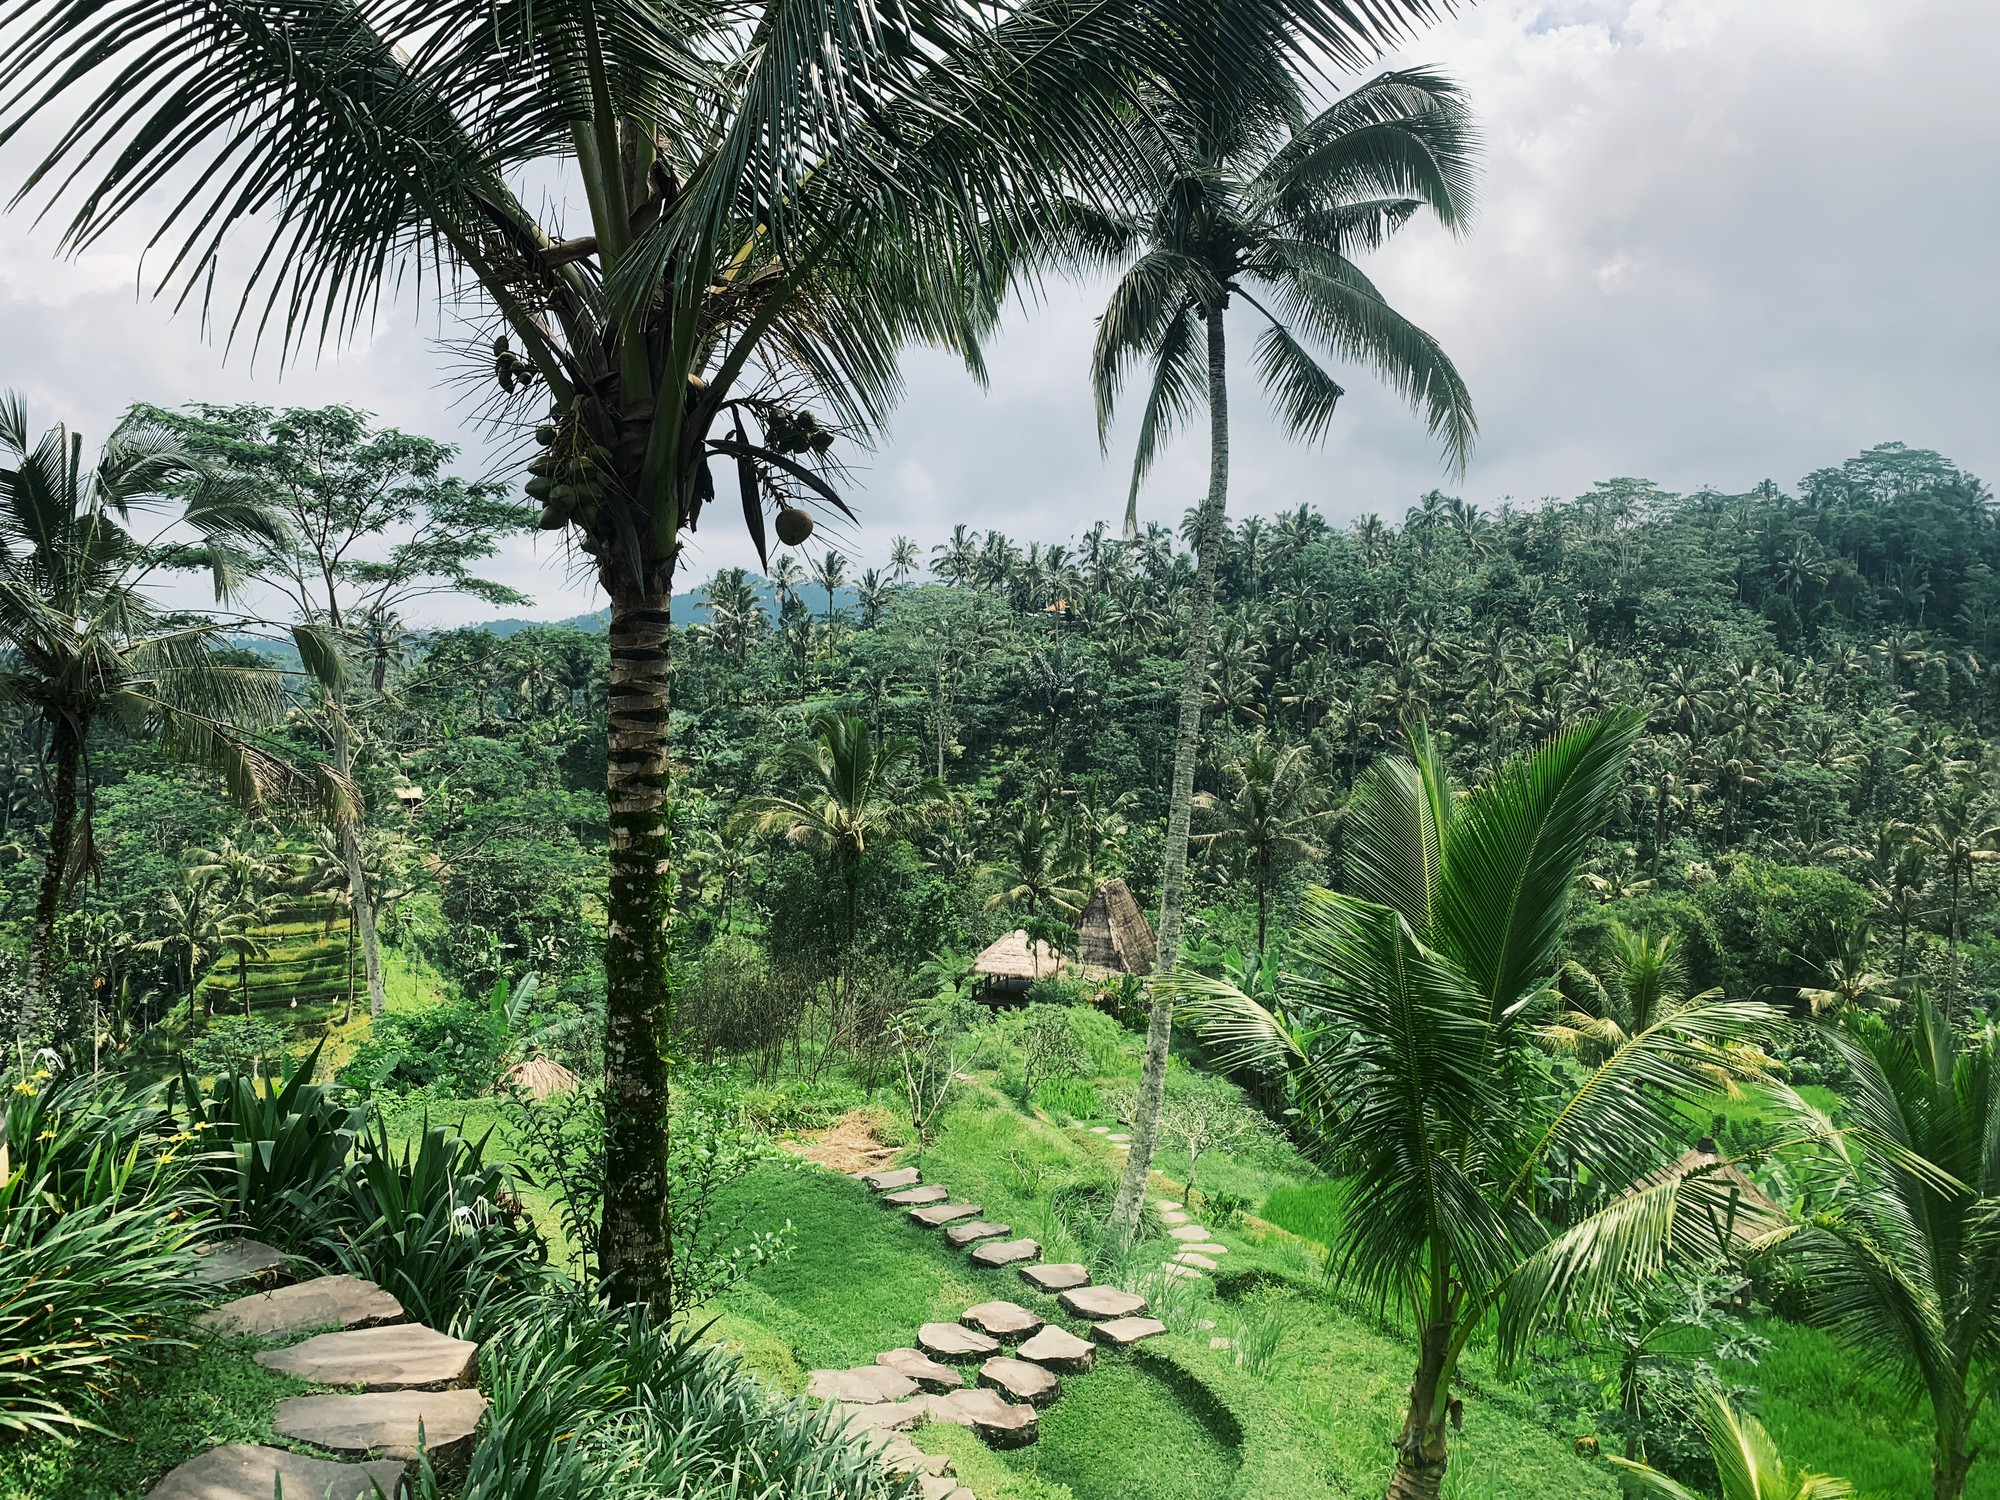 Mặc cho người khen kẻ chê về Bali, cặp vợ chồng doanh nhân vẫn chọn hòn đảo thiên đường để kỷ niệm 1 năm ngày cưới - Ảnh 4.